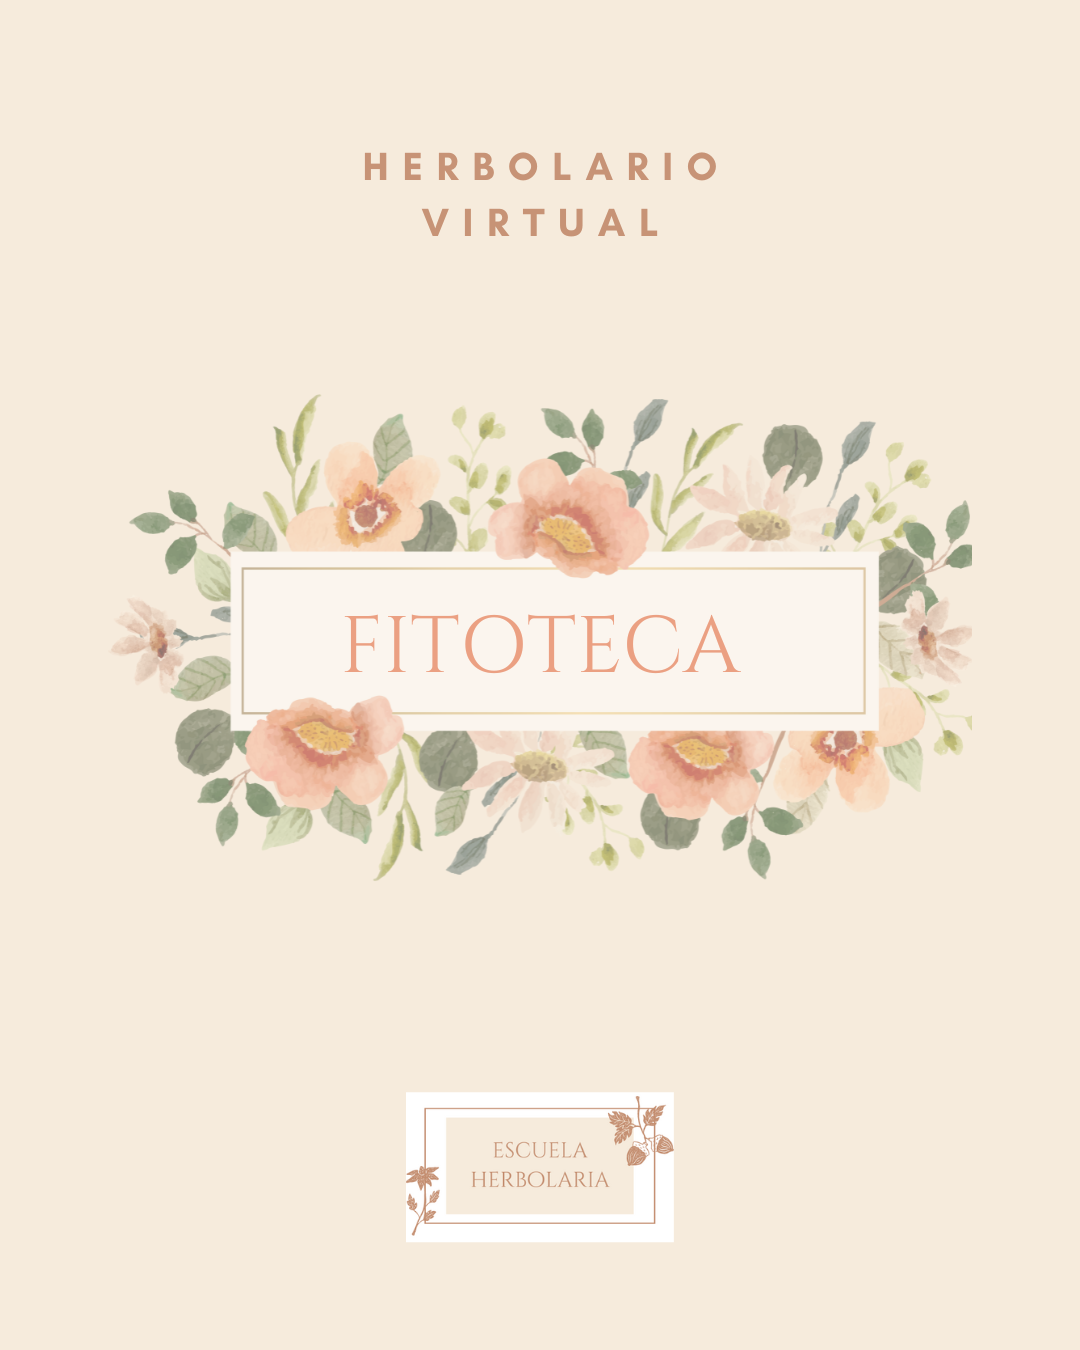 Fitoteca, herbolario virtual